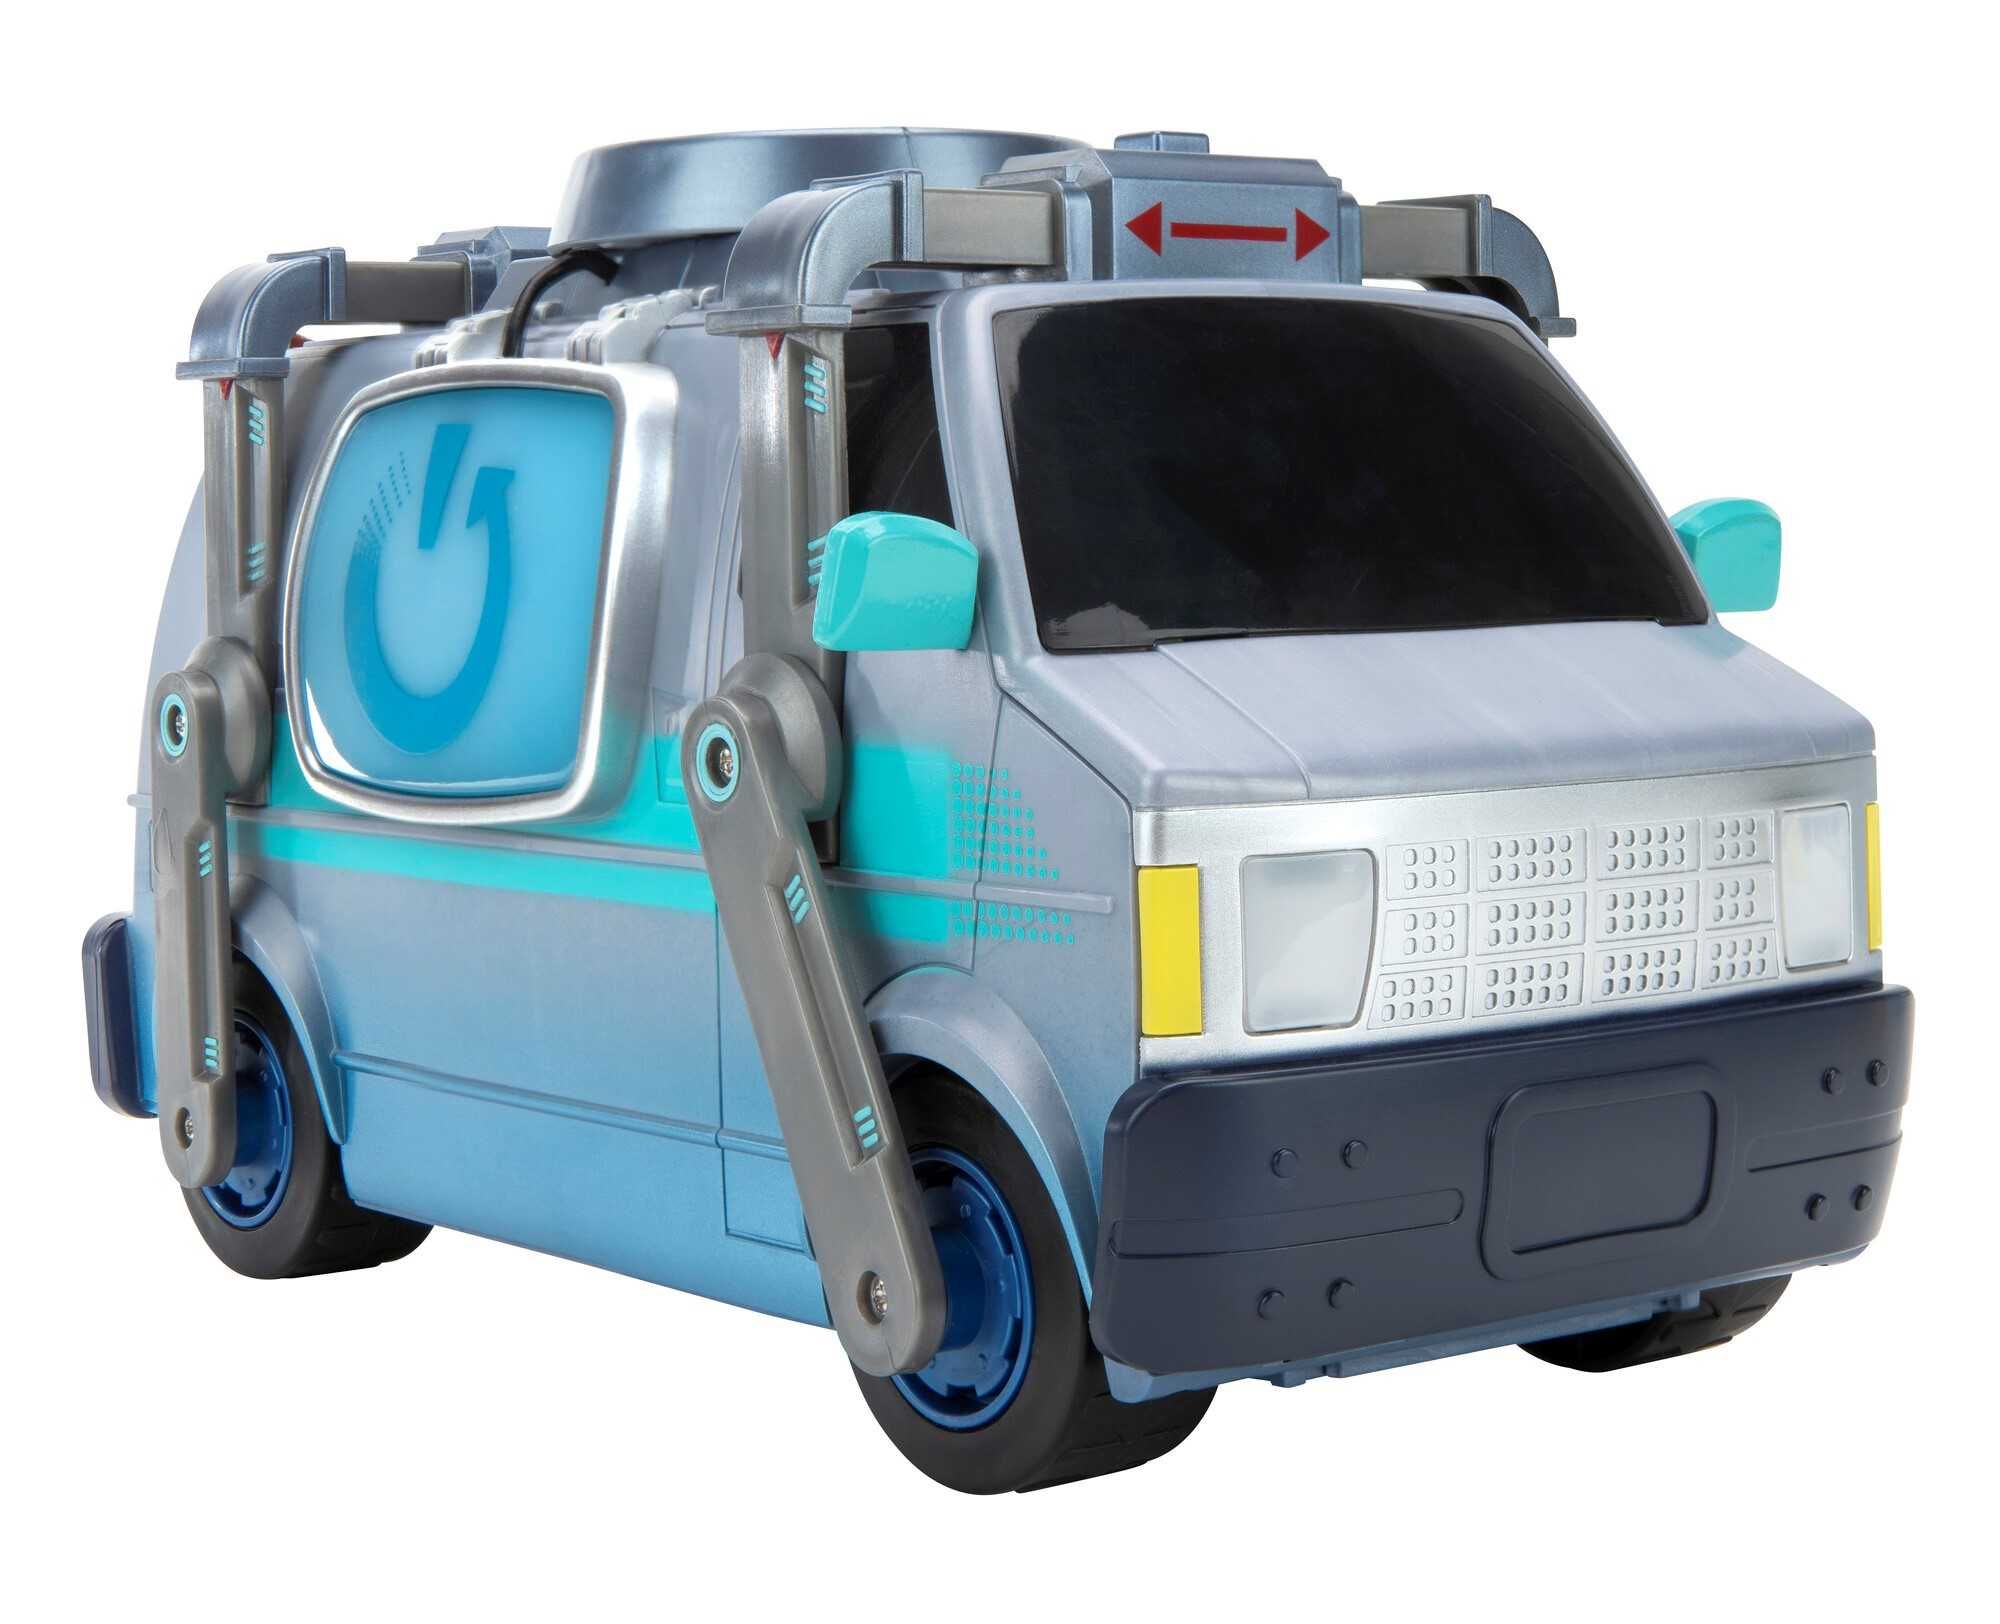 Фортнайт Фургон Deluxe Feature Vehicle Reboot Van Fortnite Jazwares